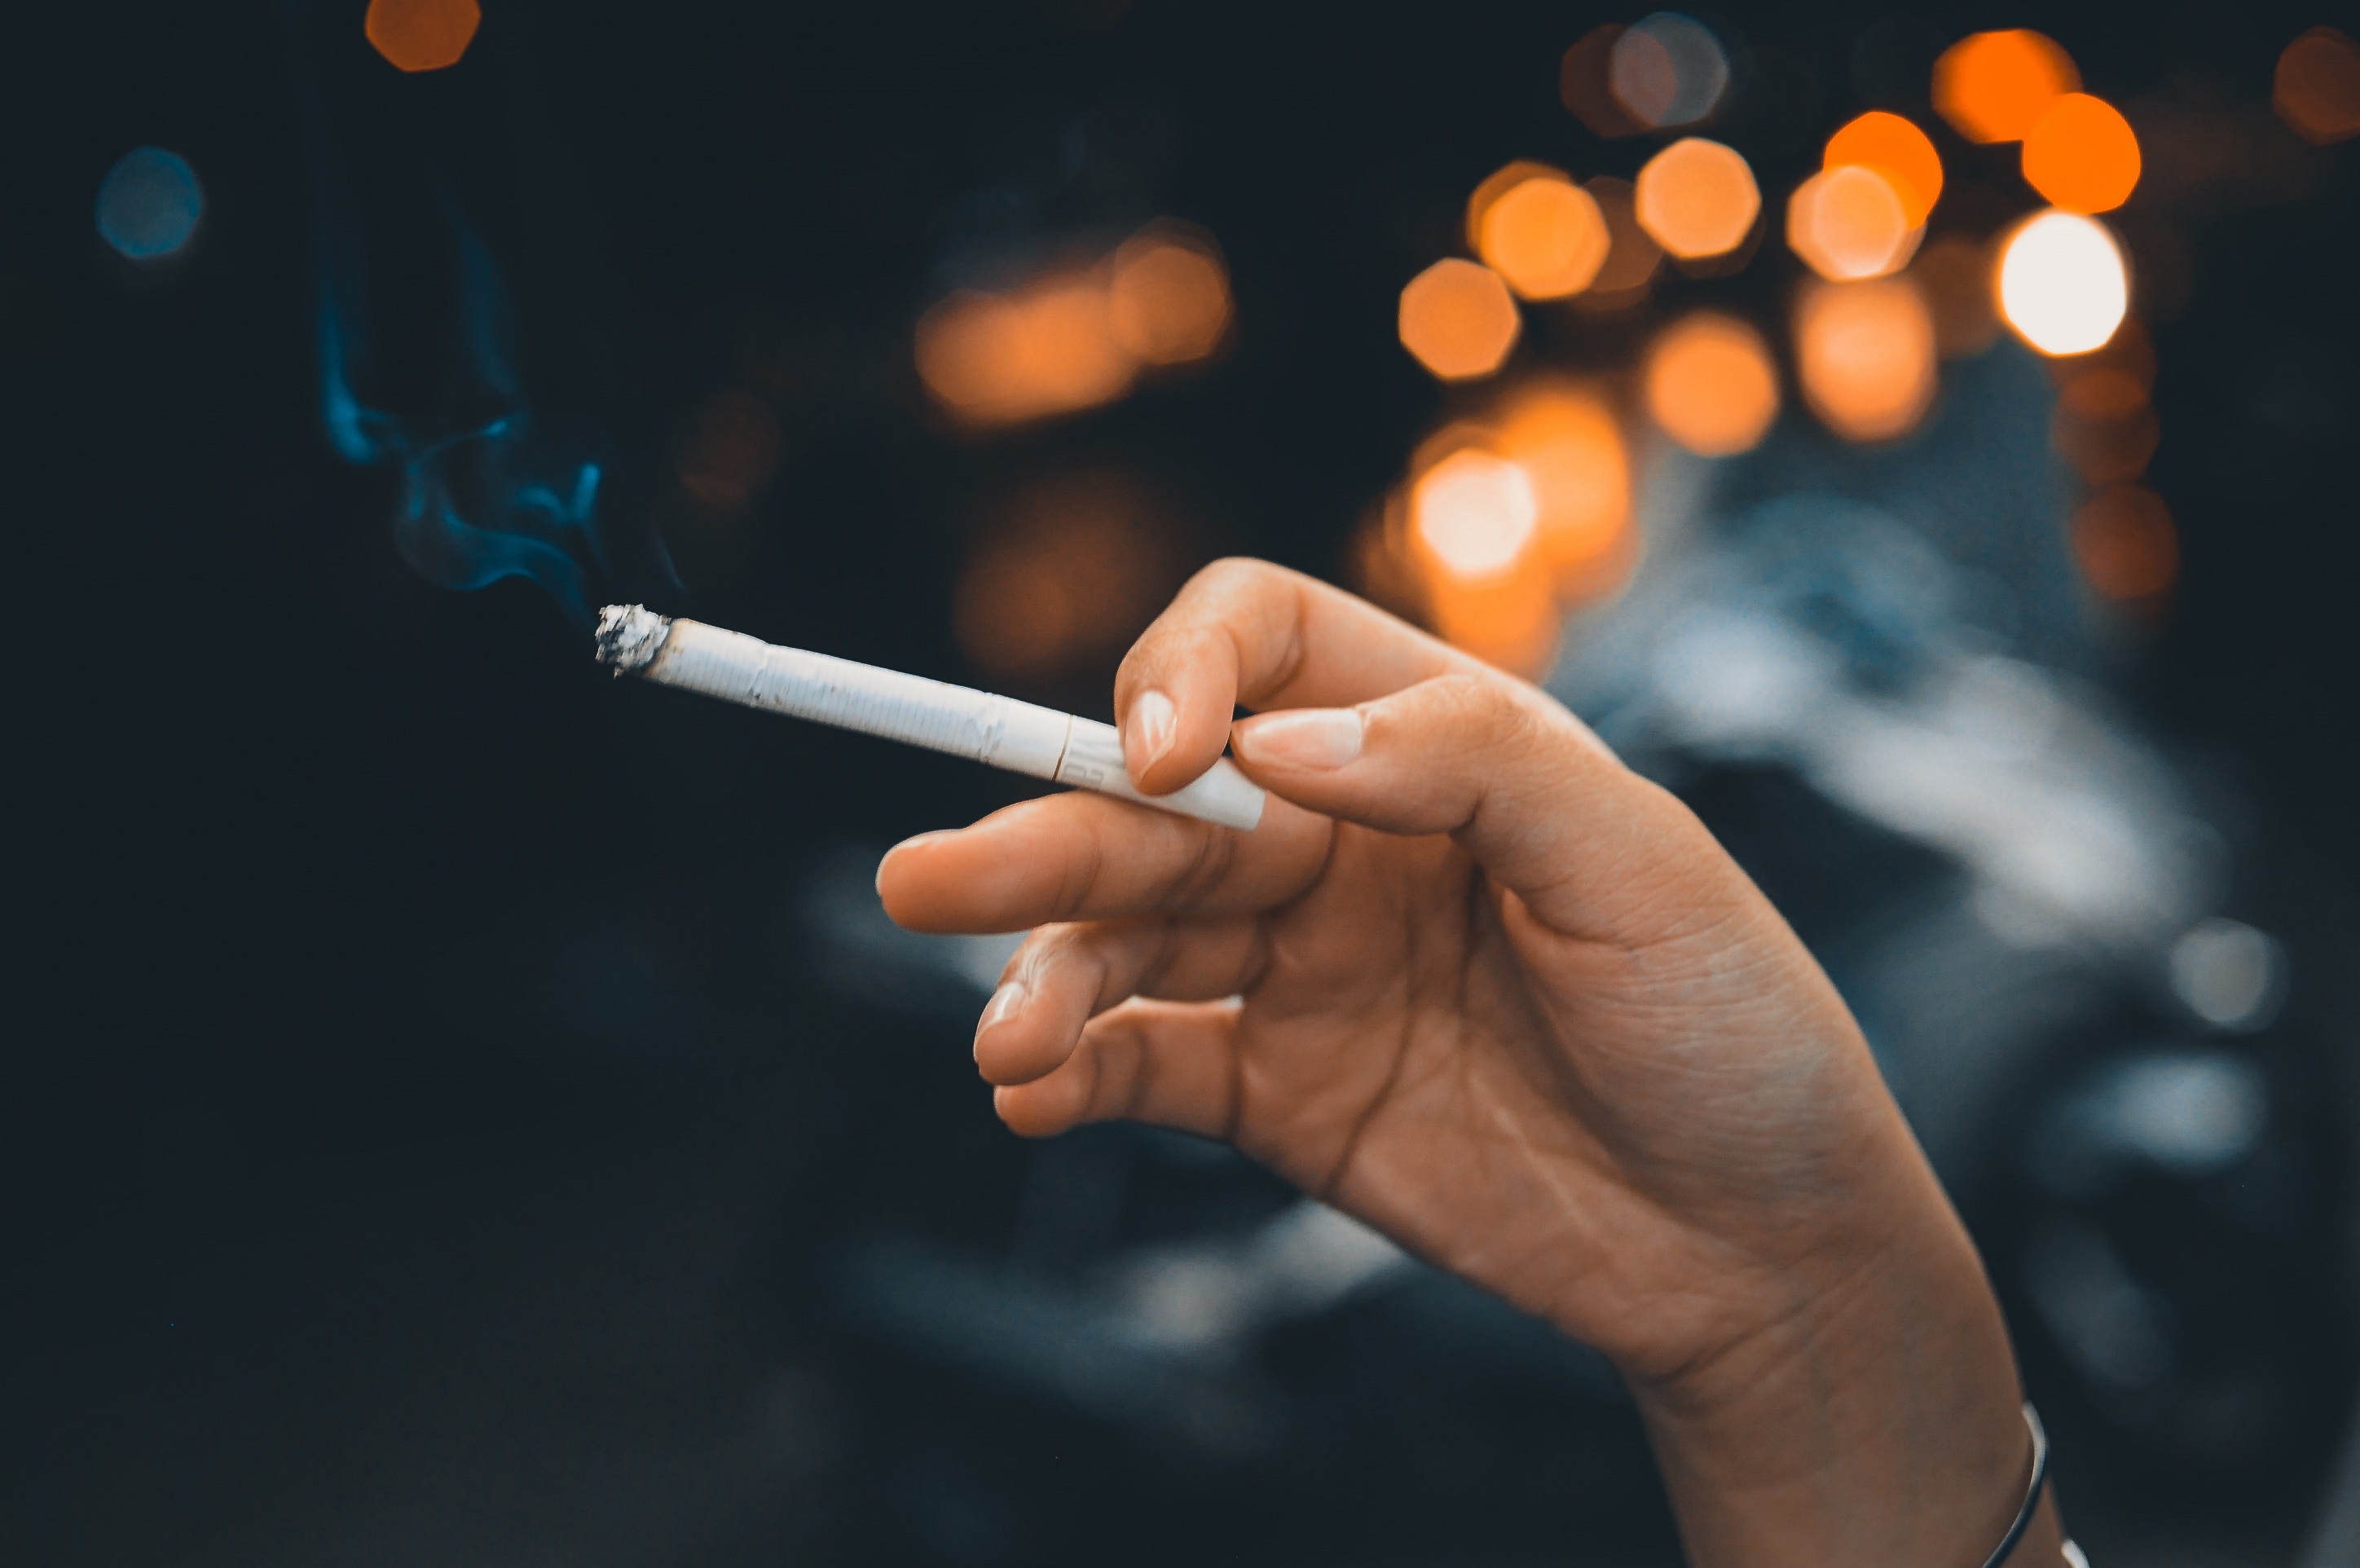 Une nouvelle étude américaine pointe du doigt des symptômes pulmonaires chez les fumeurs qui ne correspondent à aucune maladie connue. © Lê Tit, Unsplash